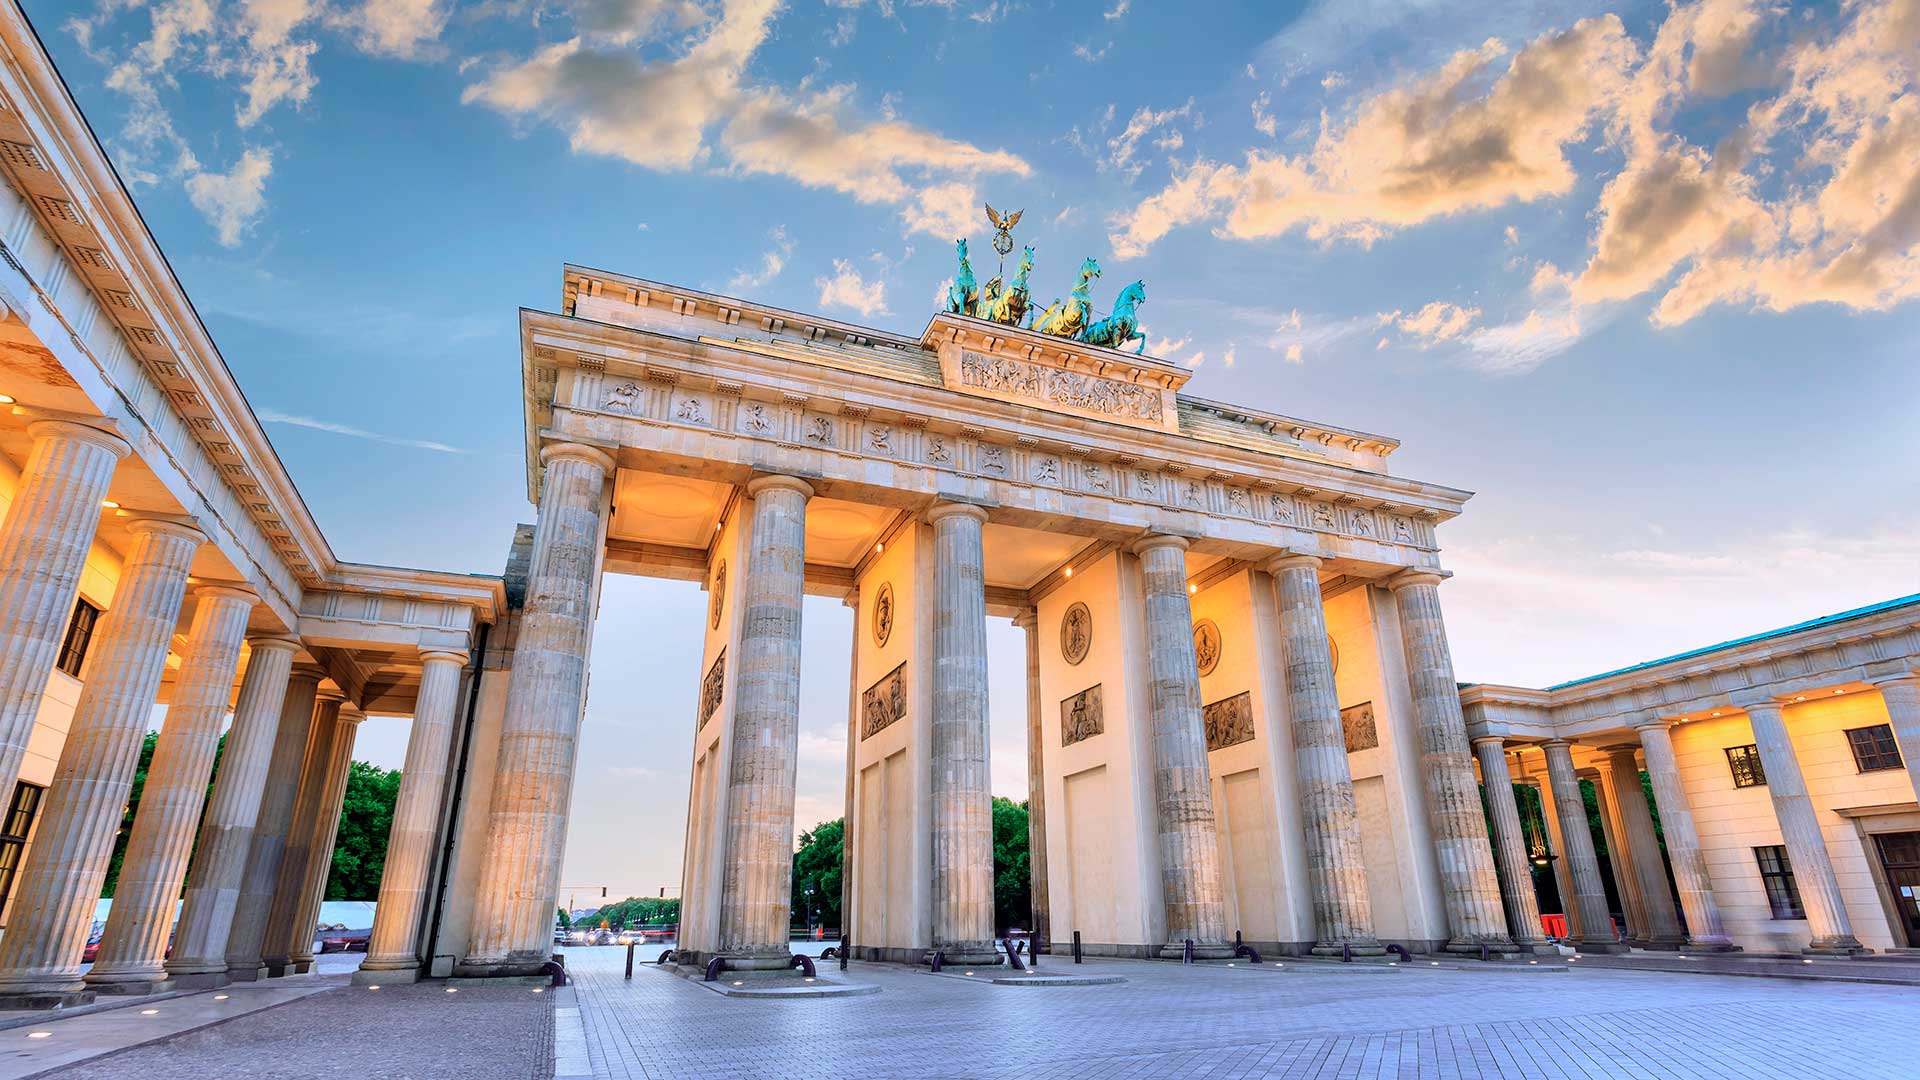 Бранденбургские ворота в Германии, где оформить ПМЖ могут иностранцы